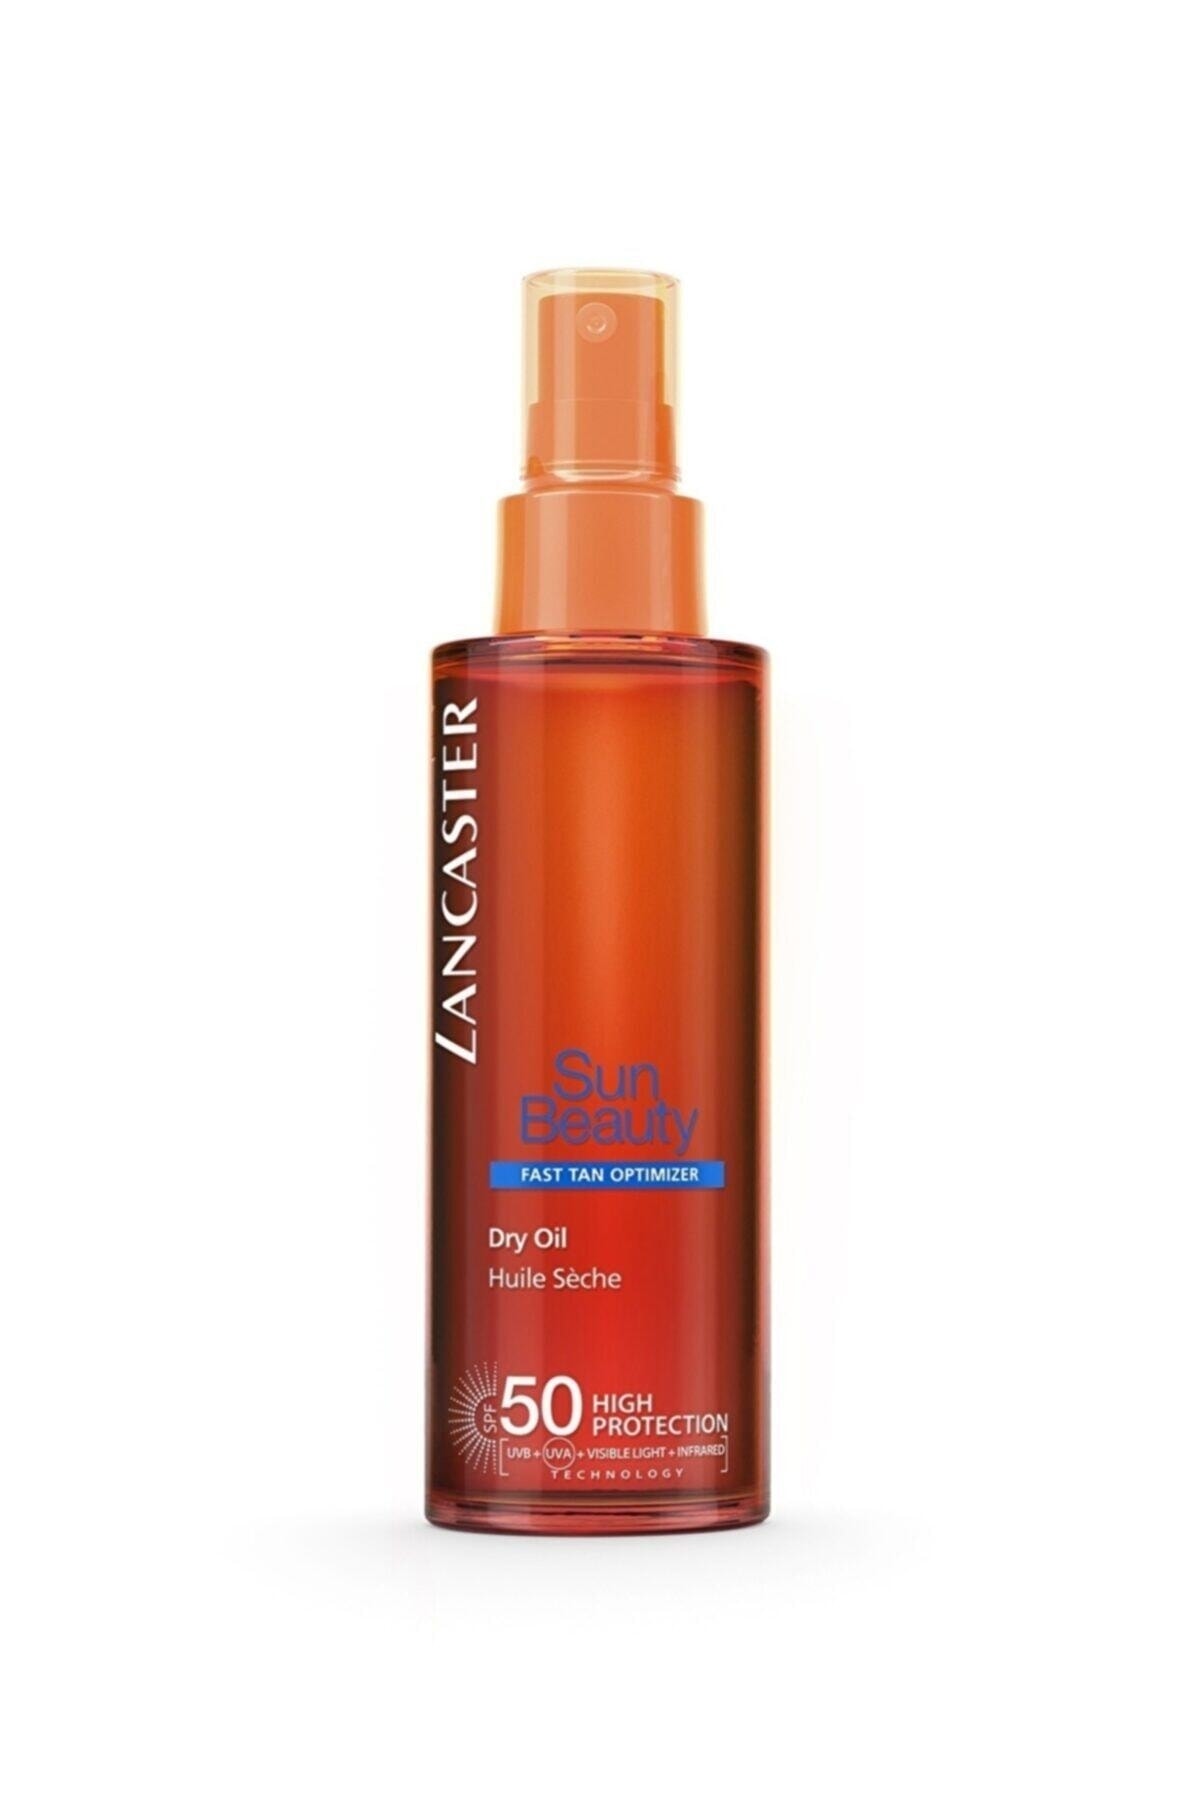 Lancaster Sun Beauty Dry Oil Fast Tan Optimizer Spf50 150ml Güneş Yağı*.